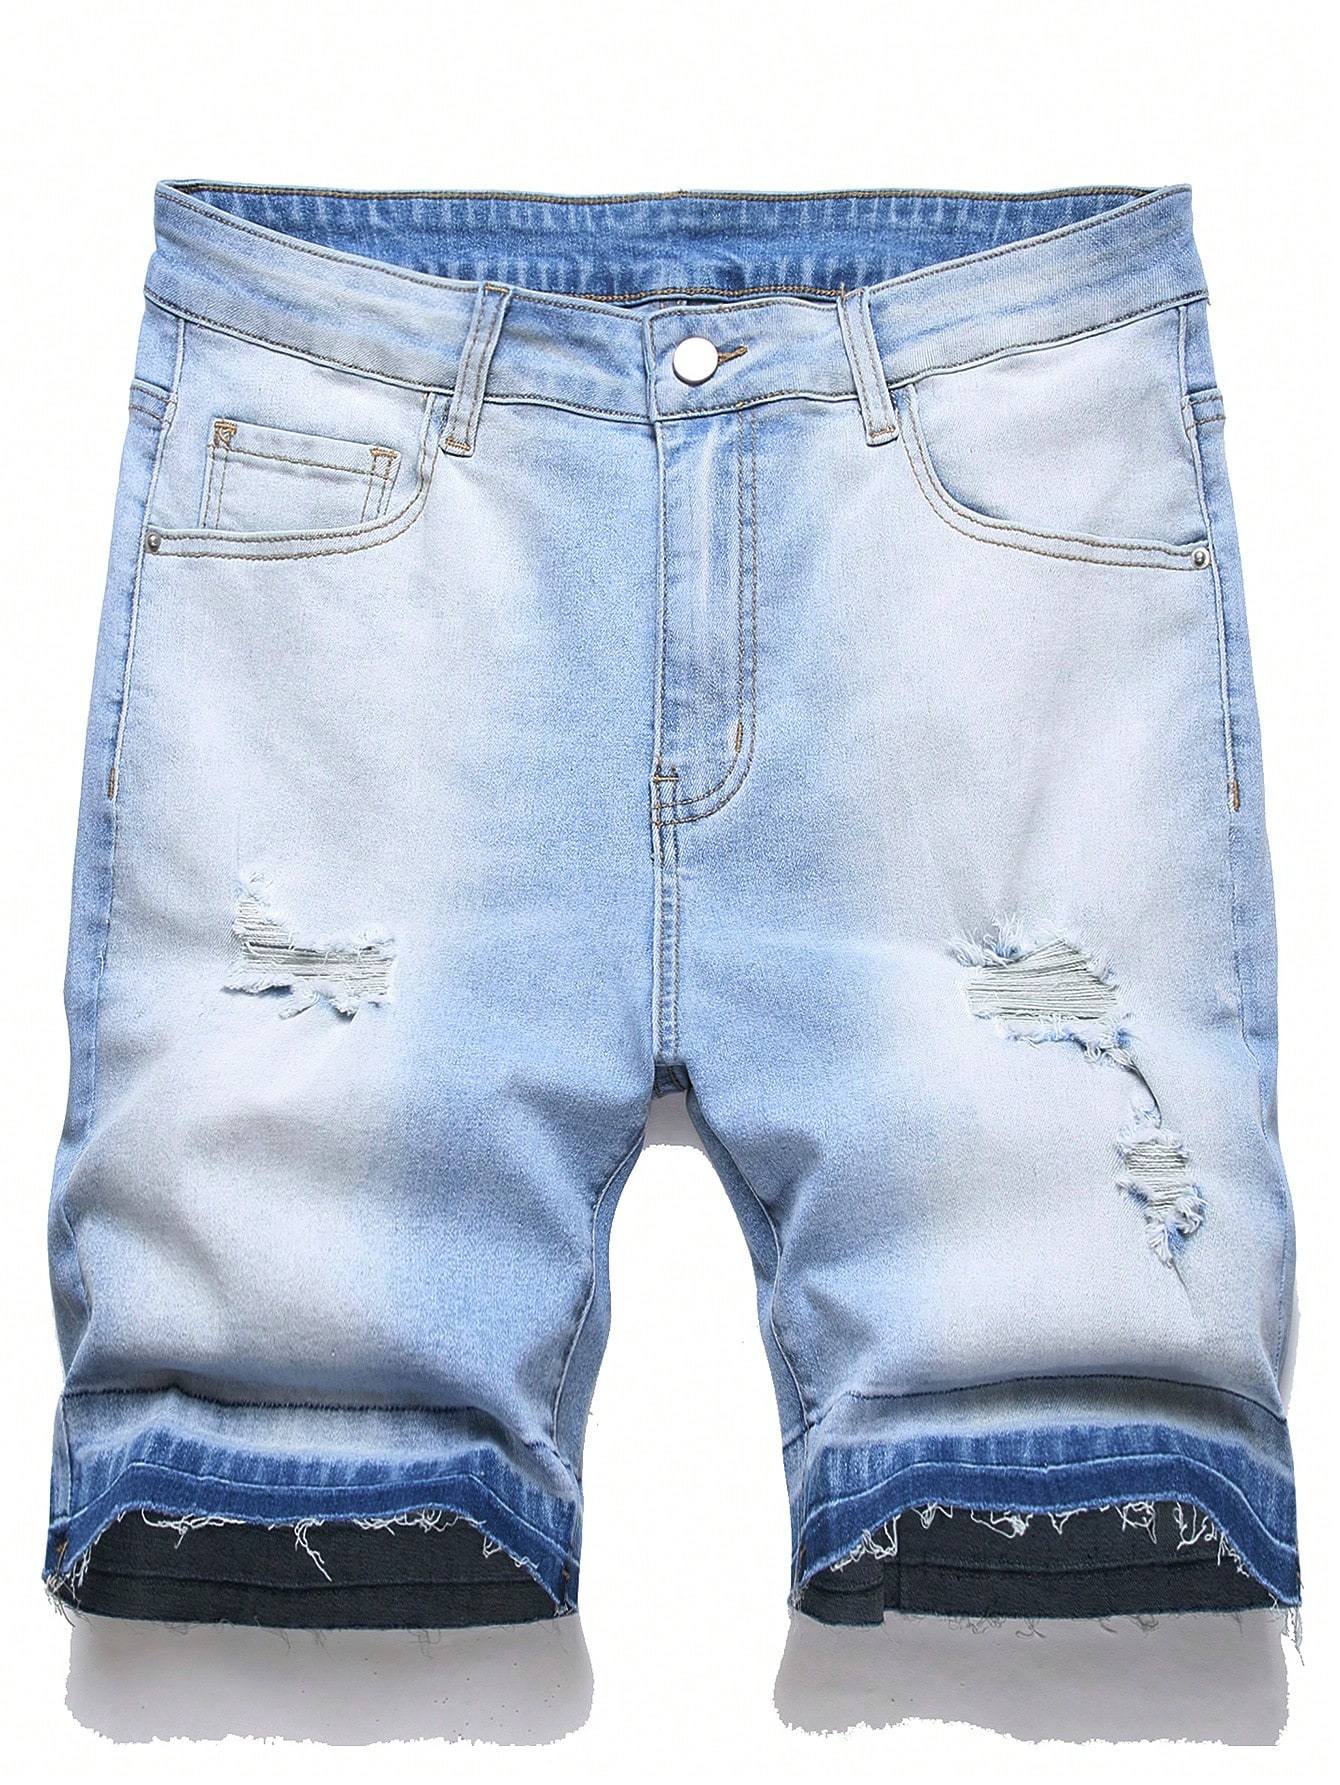 Мужские джинсовые шорты Manfinity EMRG с потертостями, легкая стирка